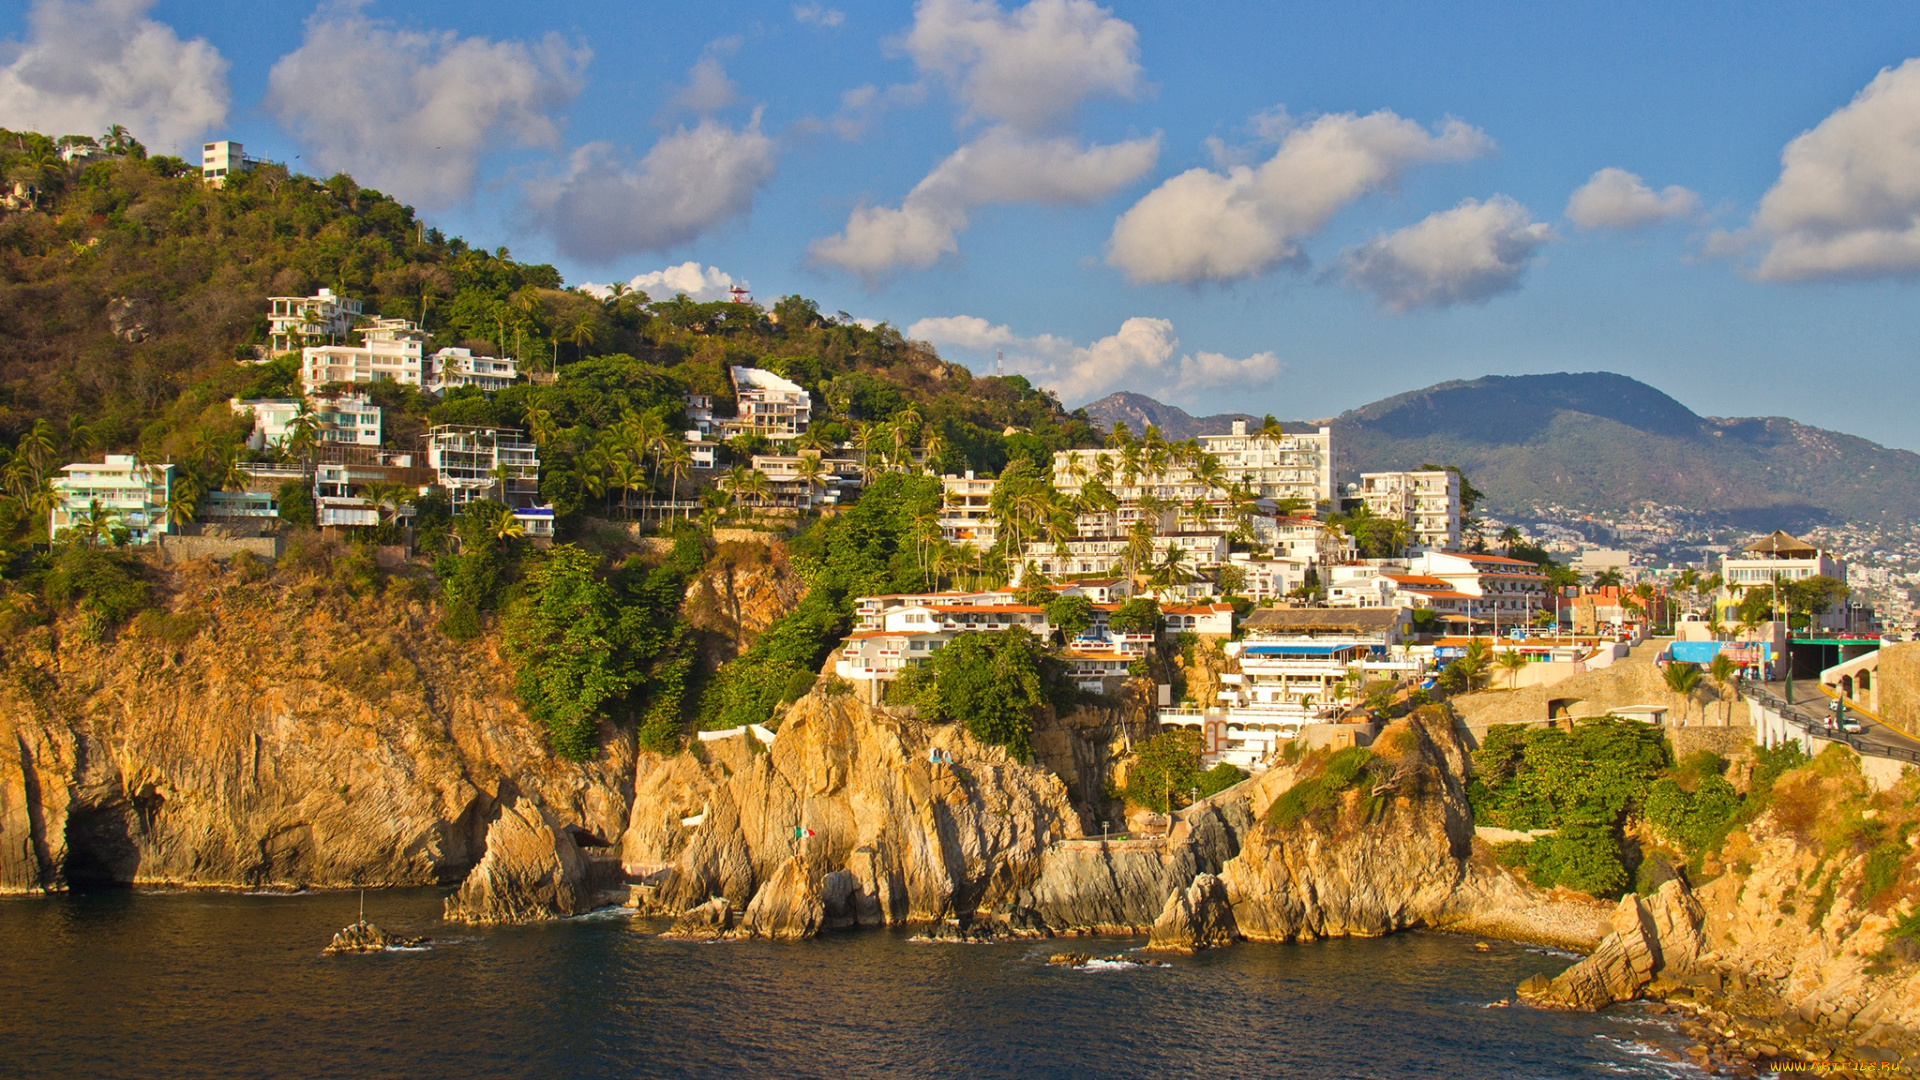 города, -, панорамы, море, горы, дома, acapulco, солнце, небо, скалы, облака, мексика, побережье, деревья